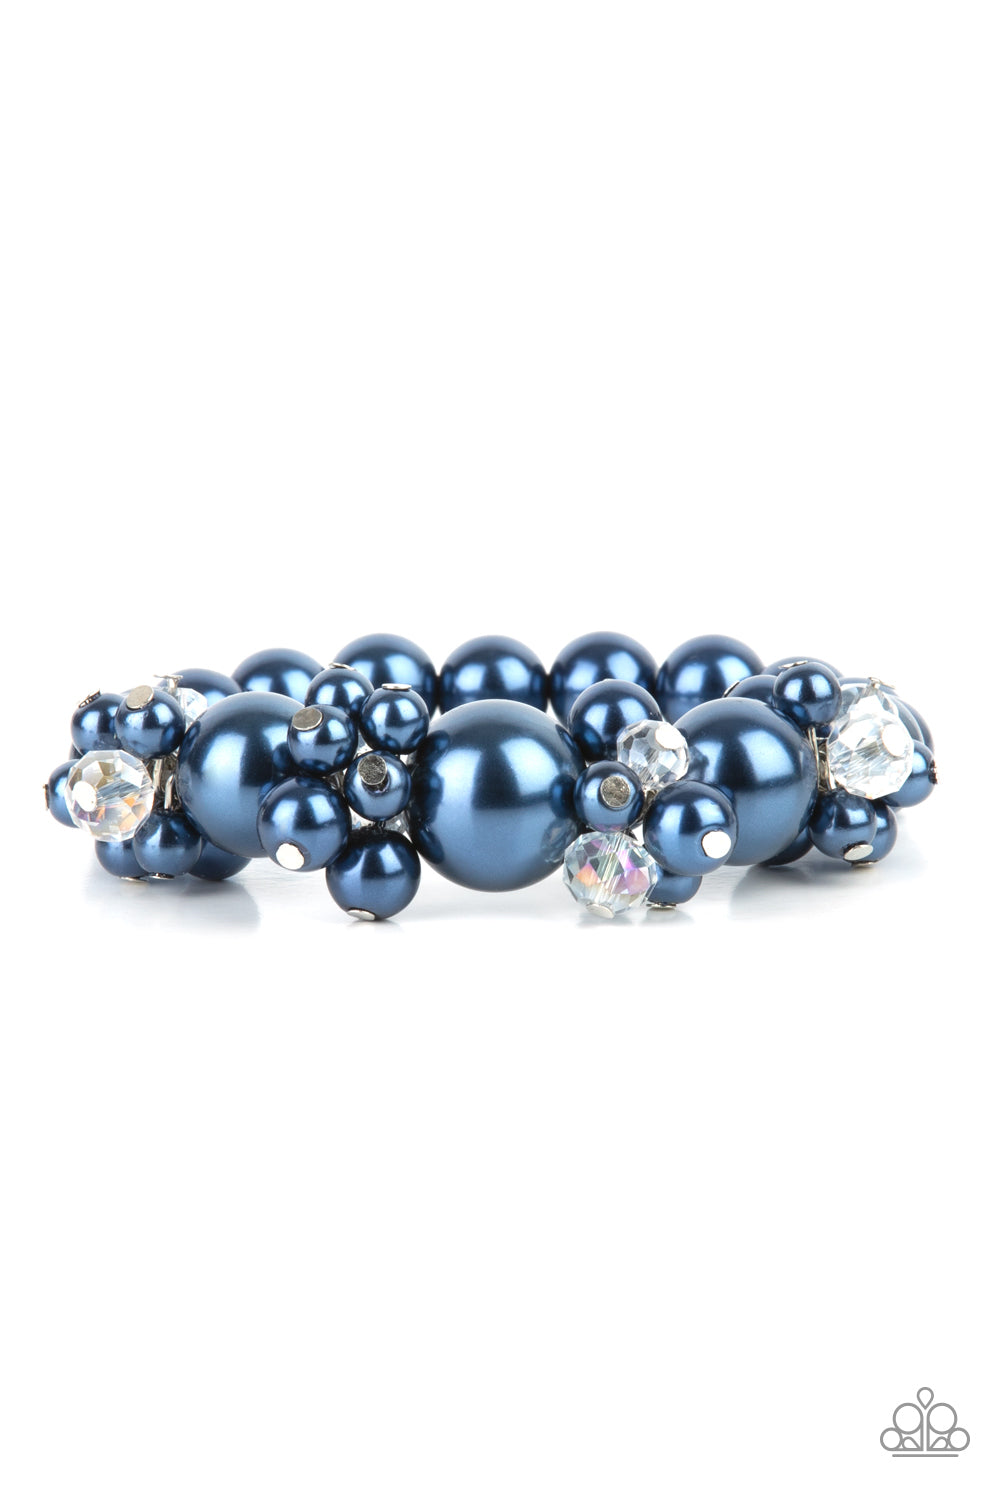 Paparazzi Upcycled Upscale - Blue Bracelet - A Finishing Touch Jewelry